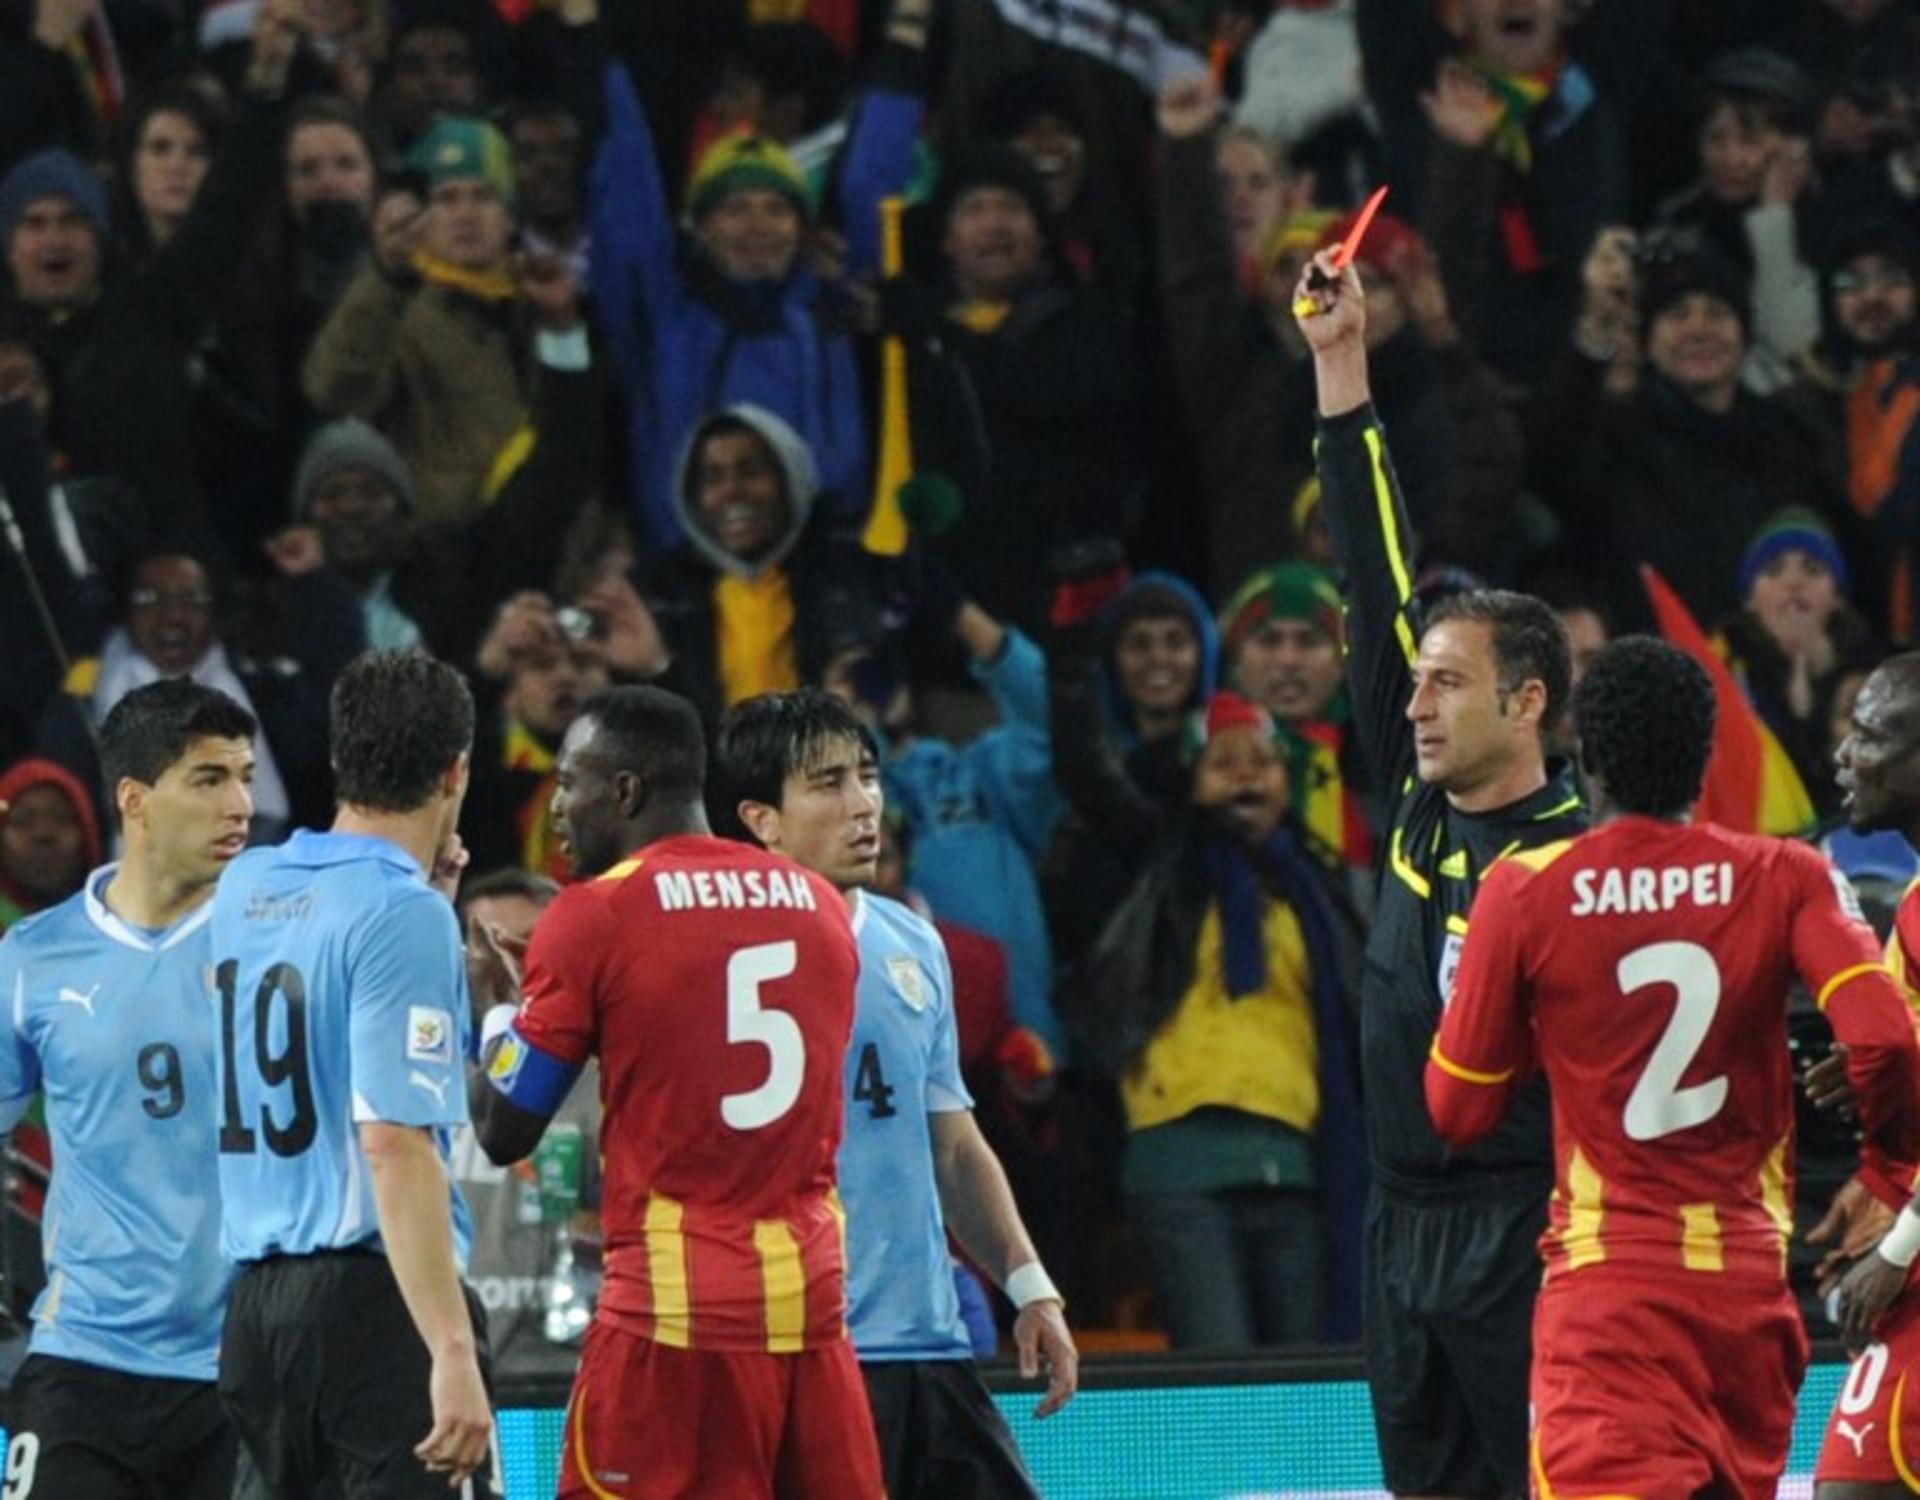 Luis Suarez (Uruguai) x Gana quartas Copa 2010 - coloca a mão na bola pra evitar que seja gol